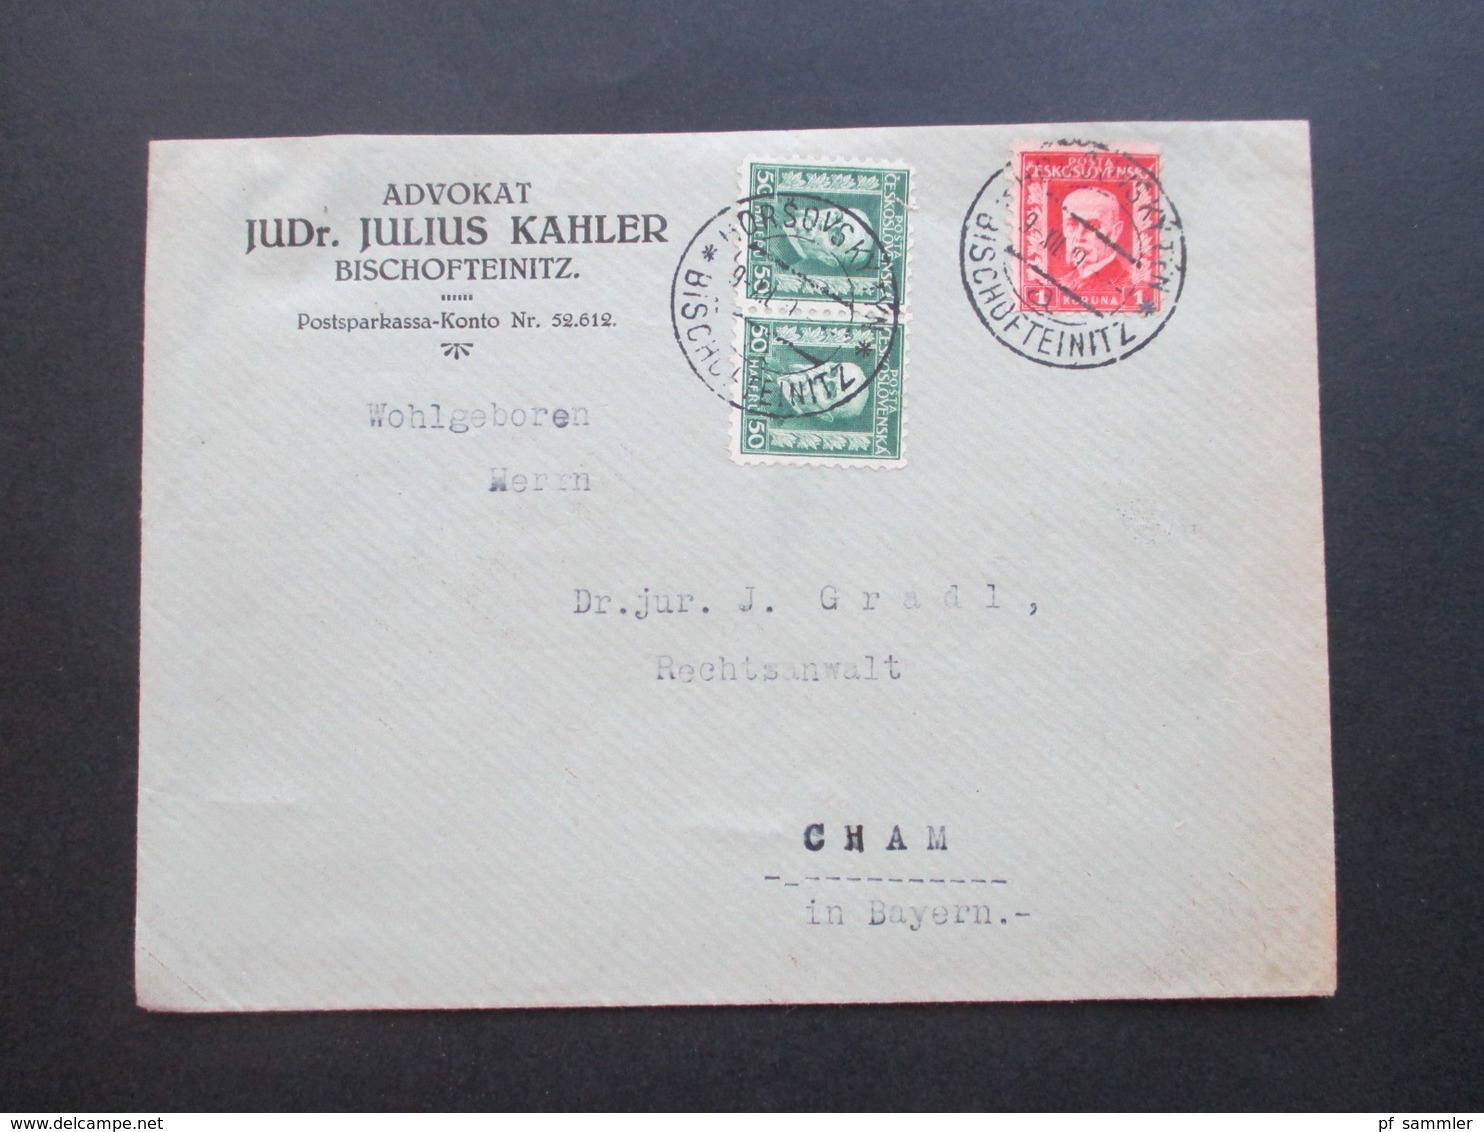 CSSR / Sudetenland 1929 Beleg Aus Bischofteinitz Advokat JUDr. Julius Kahler Zweisprachiger Stempel - Lettres & Documents